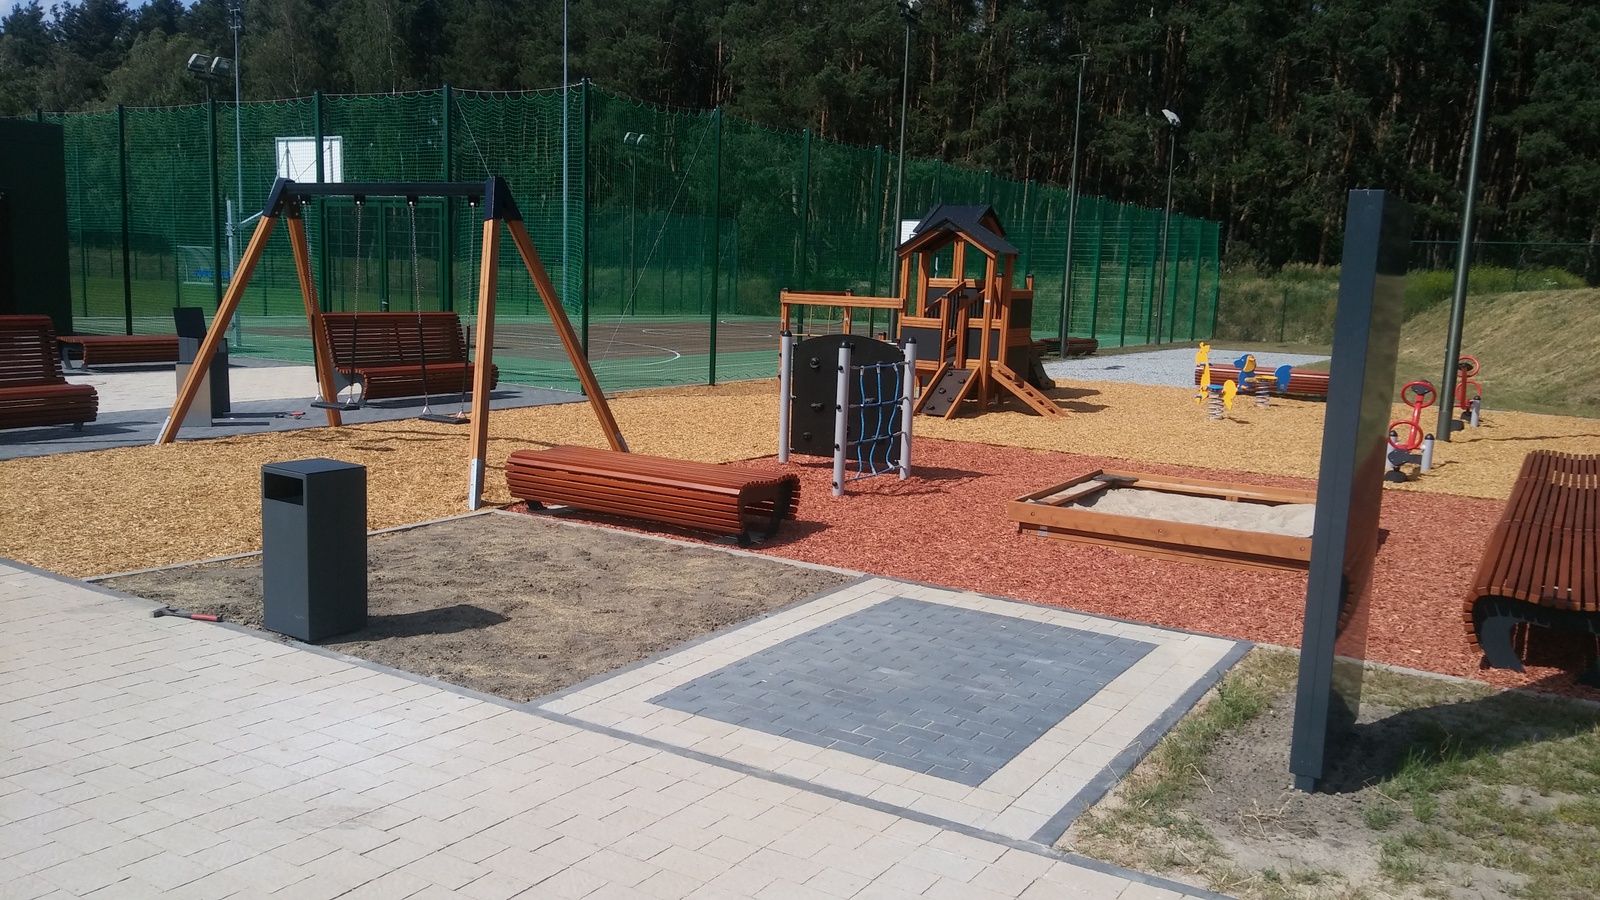 Teren rekreacyjny w Wołczkowie już otwarty